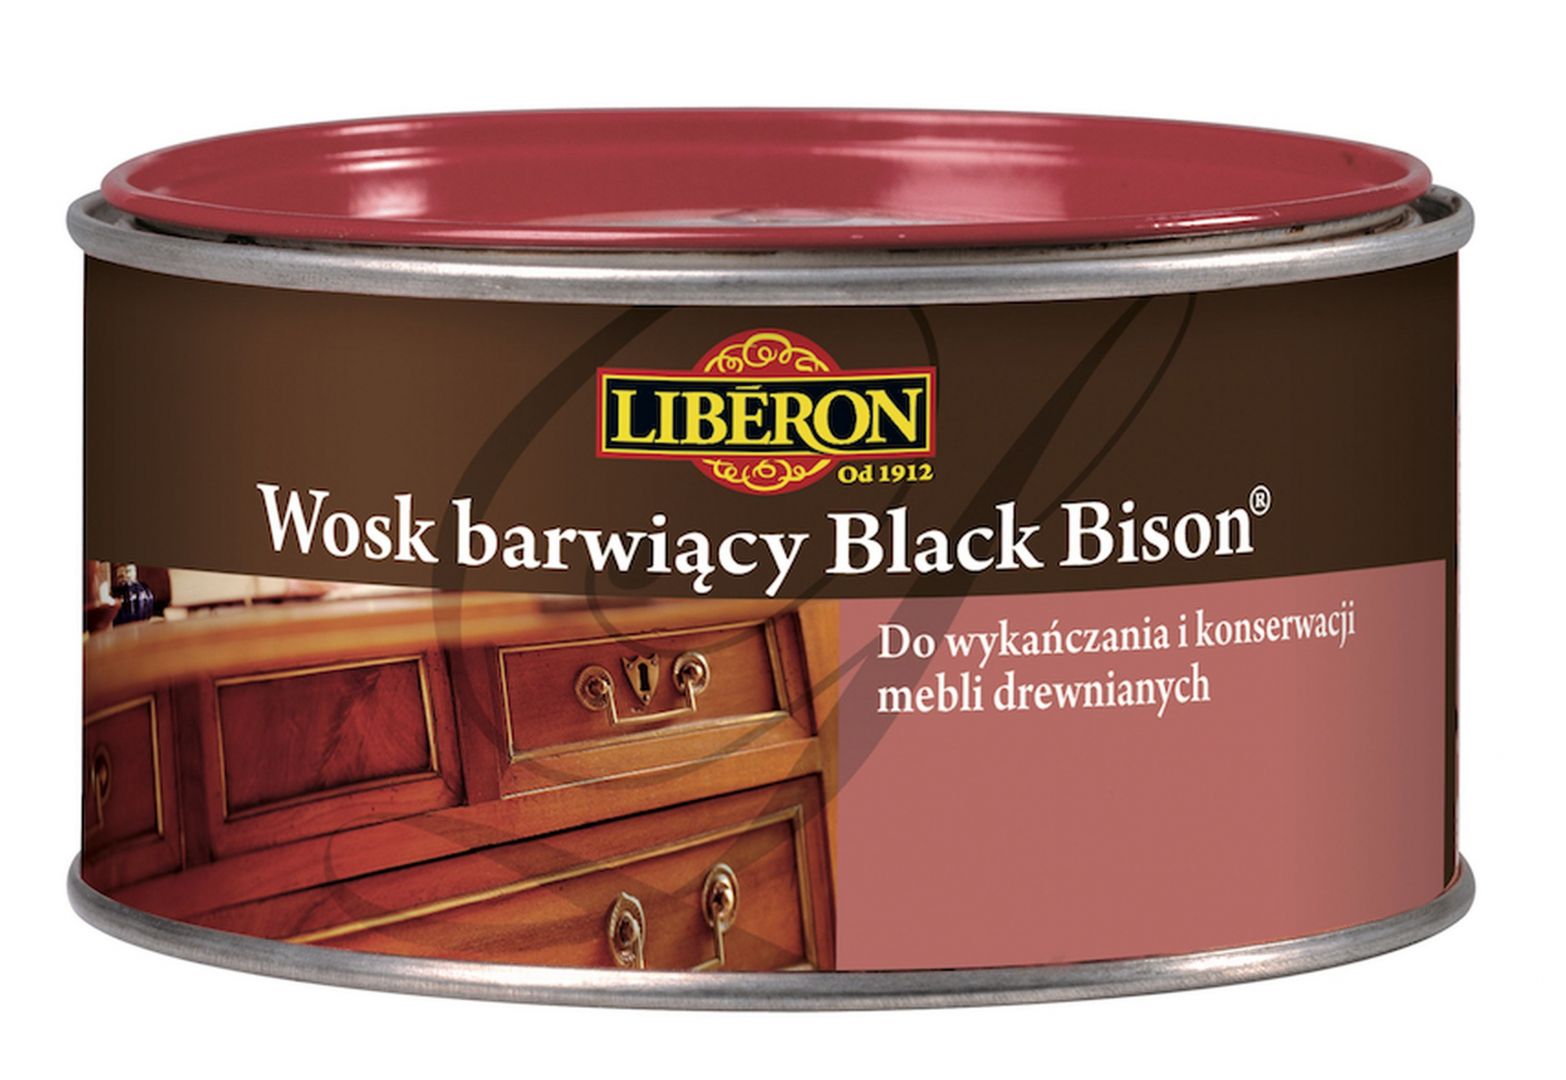 Liberon Wosk black bison.jpg